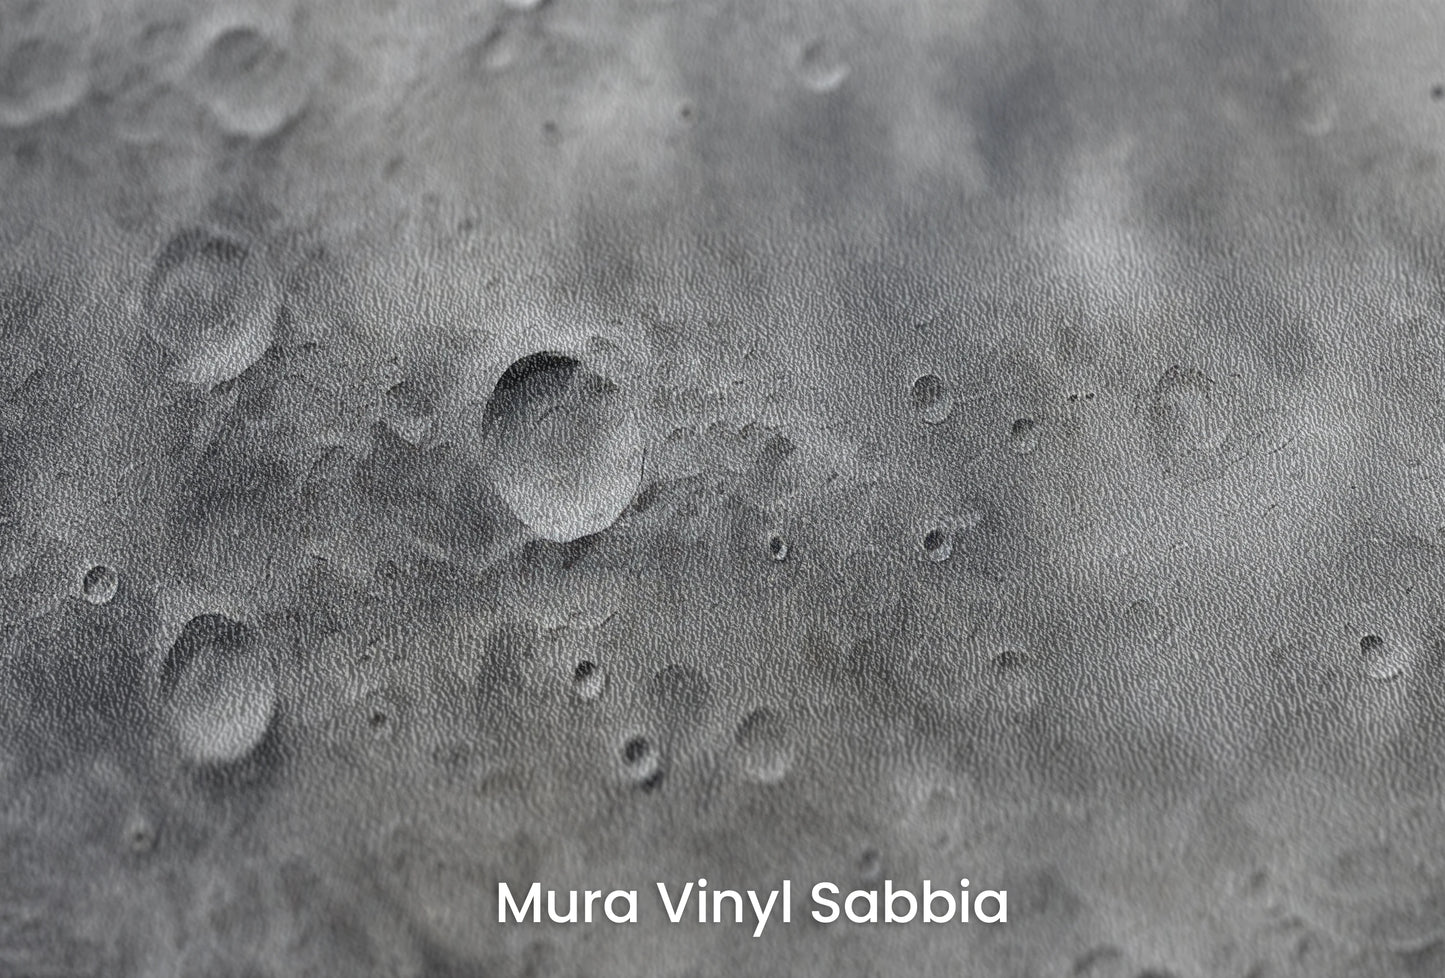 Zbliżenie na artystyczną fototapetę o nazwie Venusian Glow na podłożu Mura Vinyl Sabbia struktura grubego ziarna piasku.